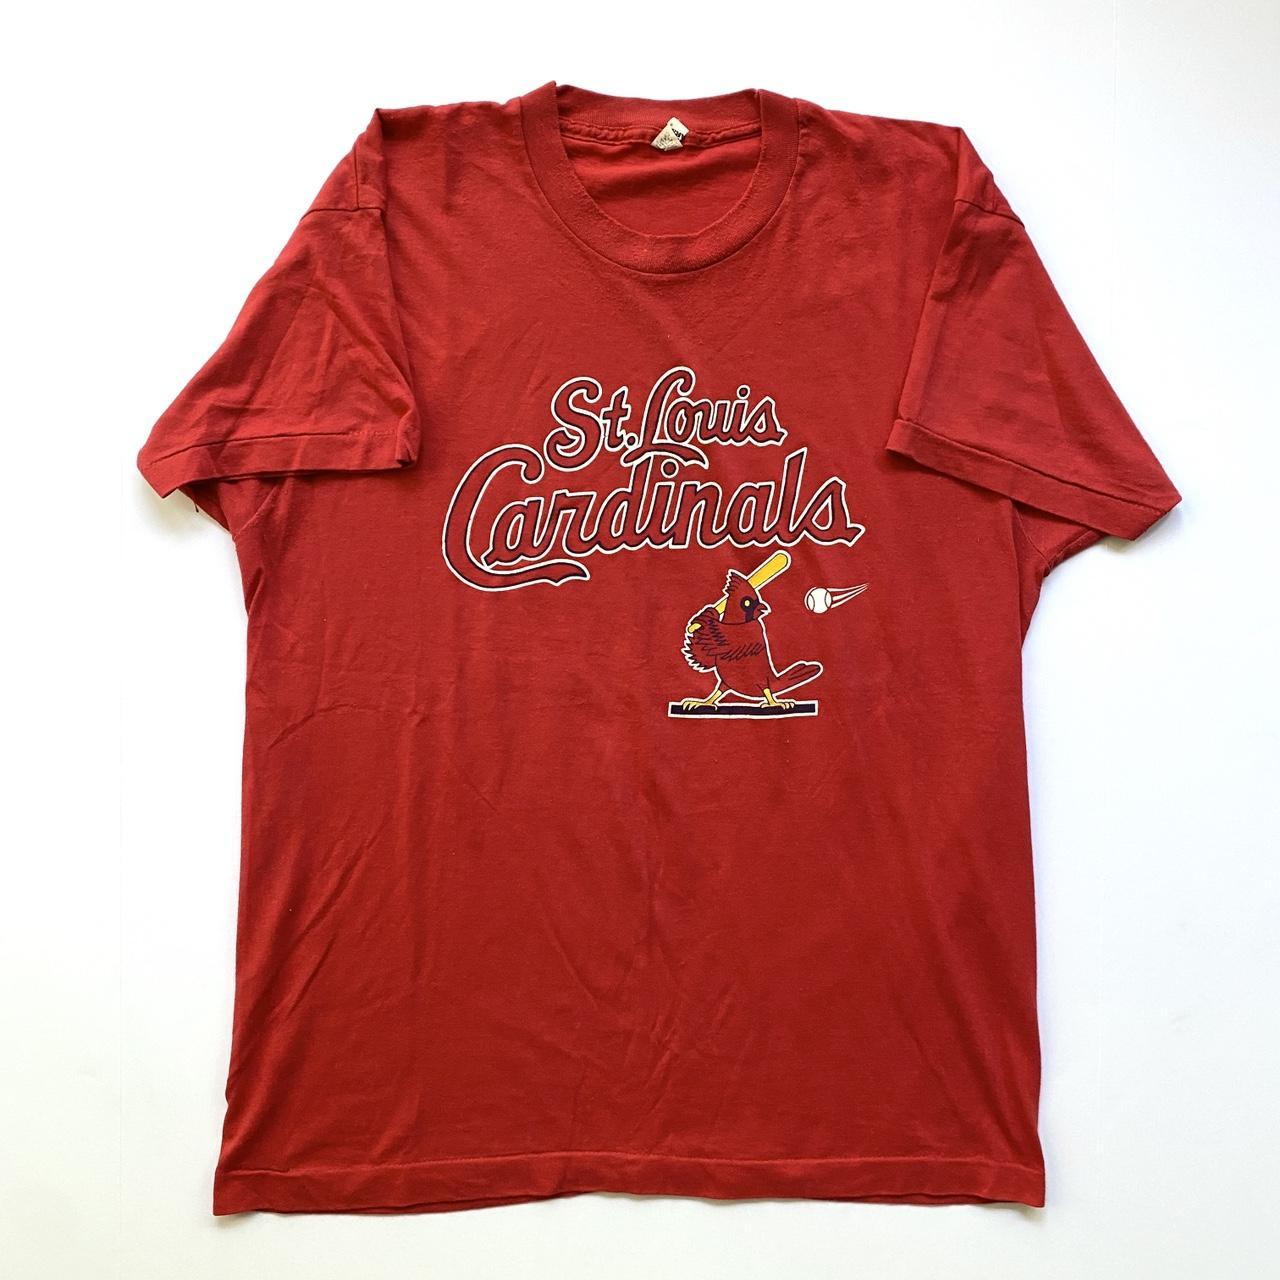 Vintage St. Louis Cardinals t shirt. This vintage